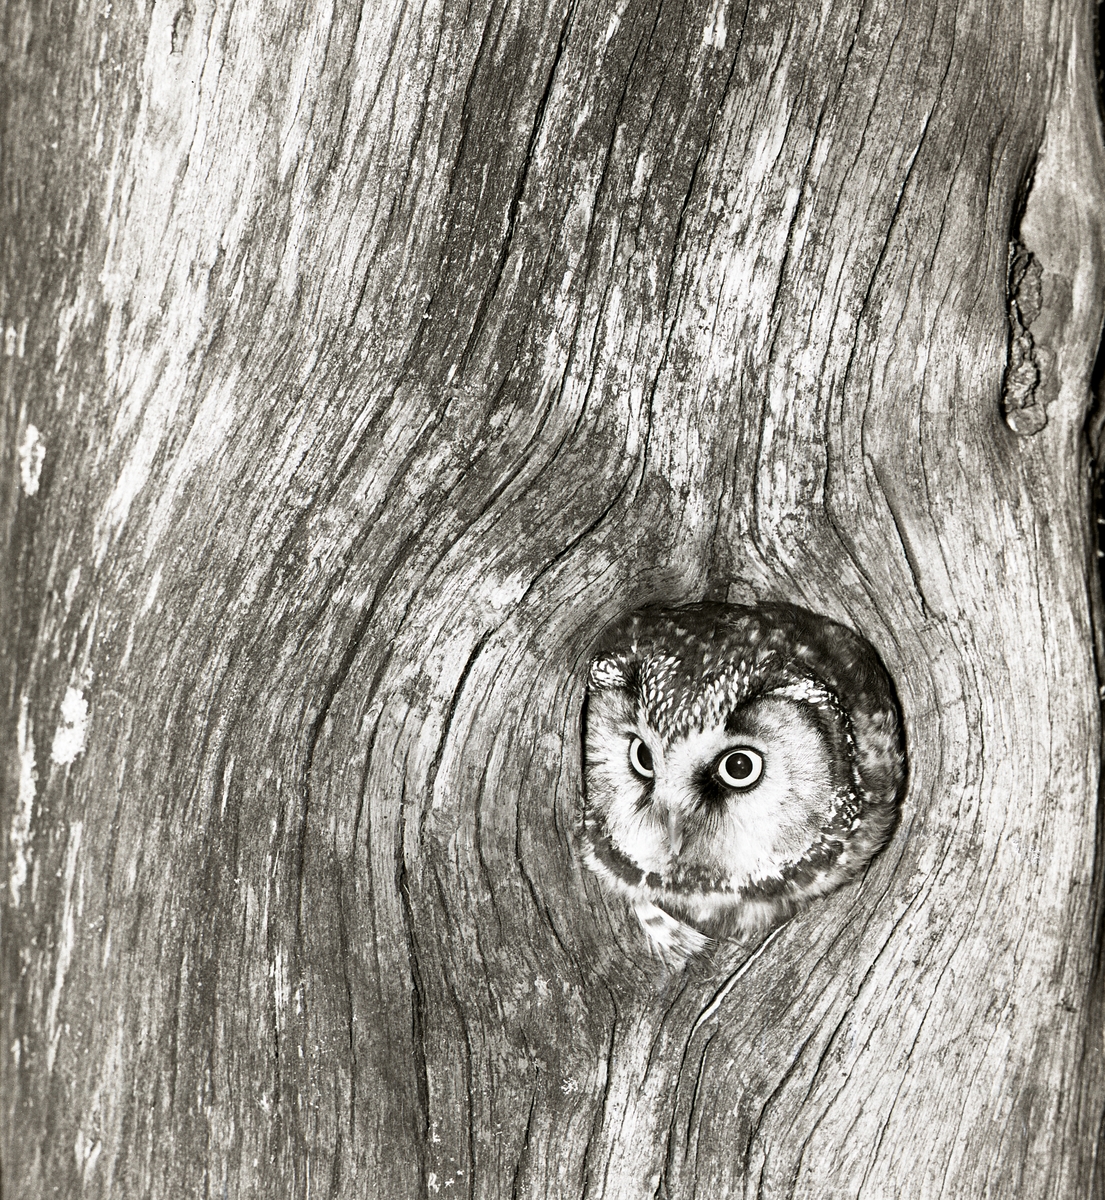 En pärluggla sitter i en trädstam och tittar ut genom ett hål, Året är 1959.